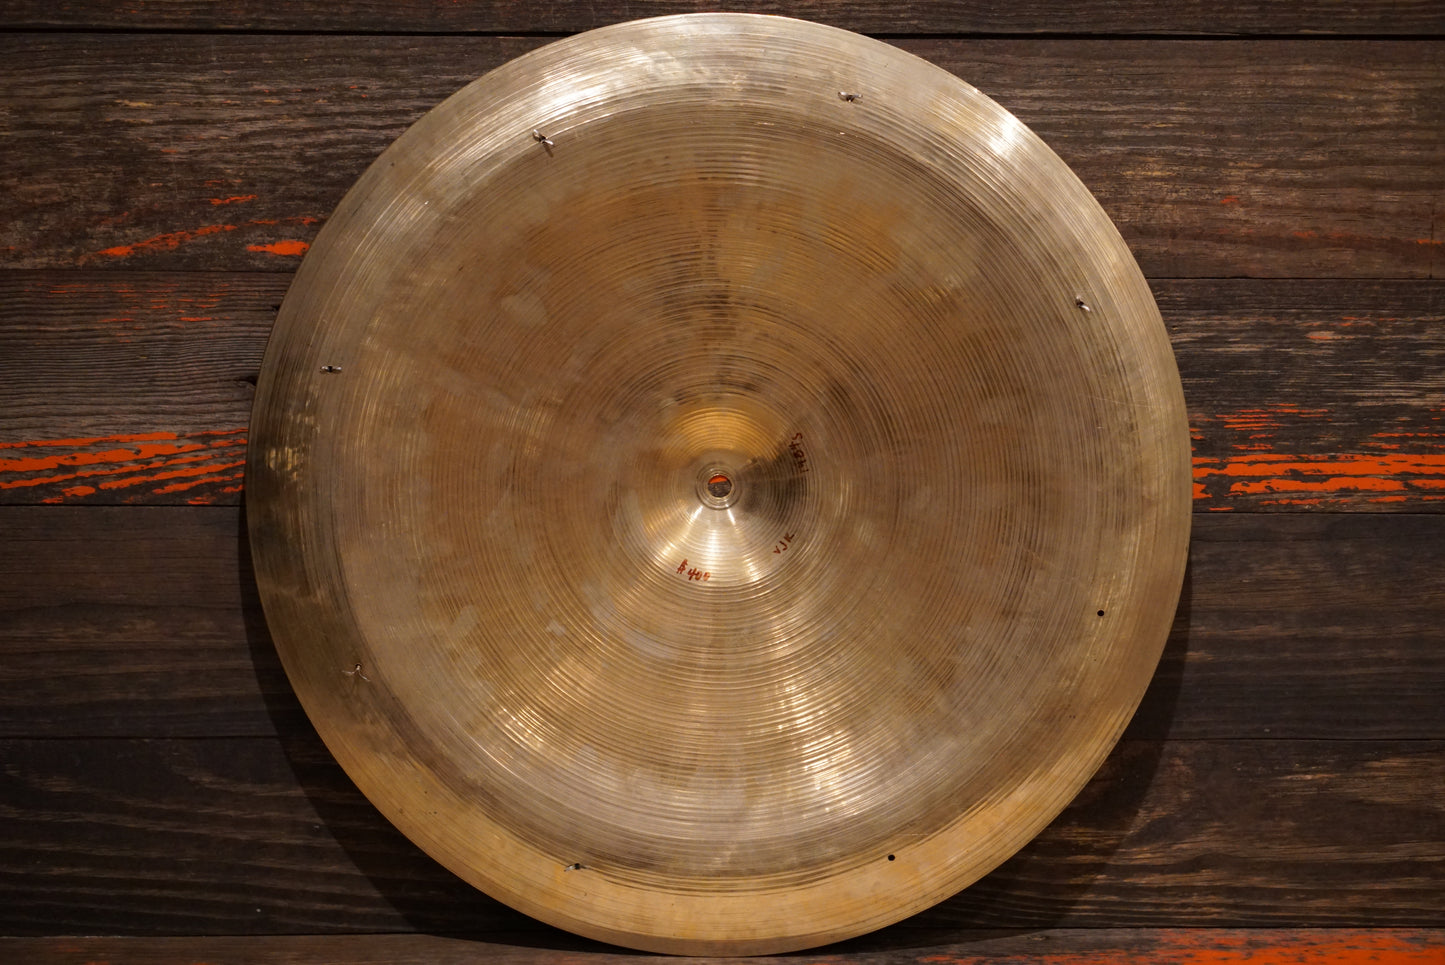 Zildjian 20" Avedis 1960s Swish Cymbal - 1984g